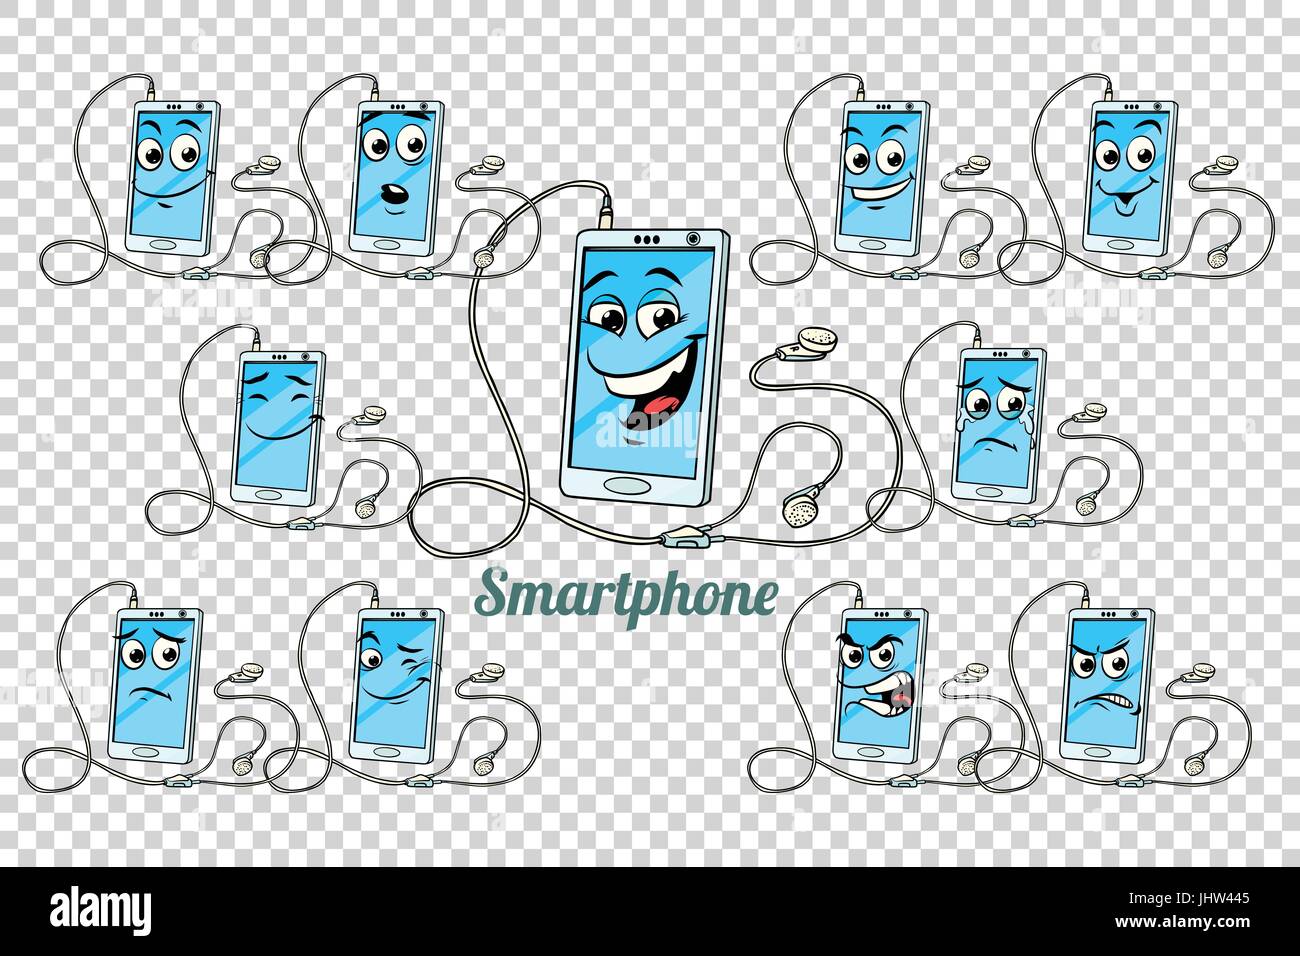 Smartphone-Kopfhörer Emotionen Zeichen Sammlungssatz. Isolierten neutralen Hintergrund. Retro Comic Buch Style Cartoon Pop-Art-Vektor-illustration Stock Vektor